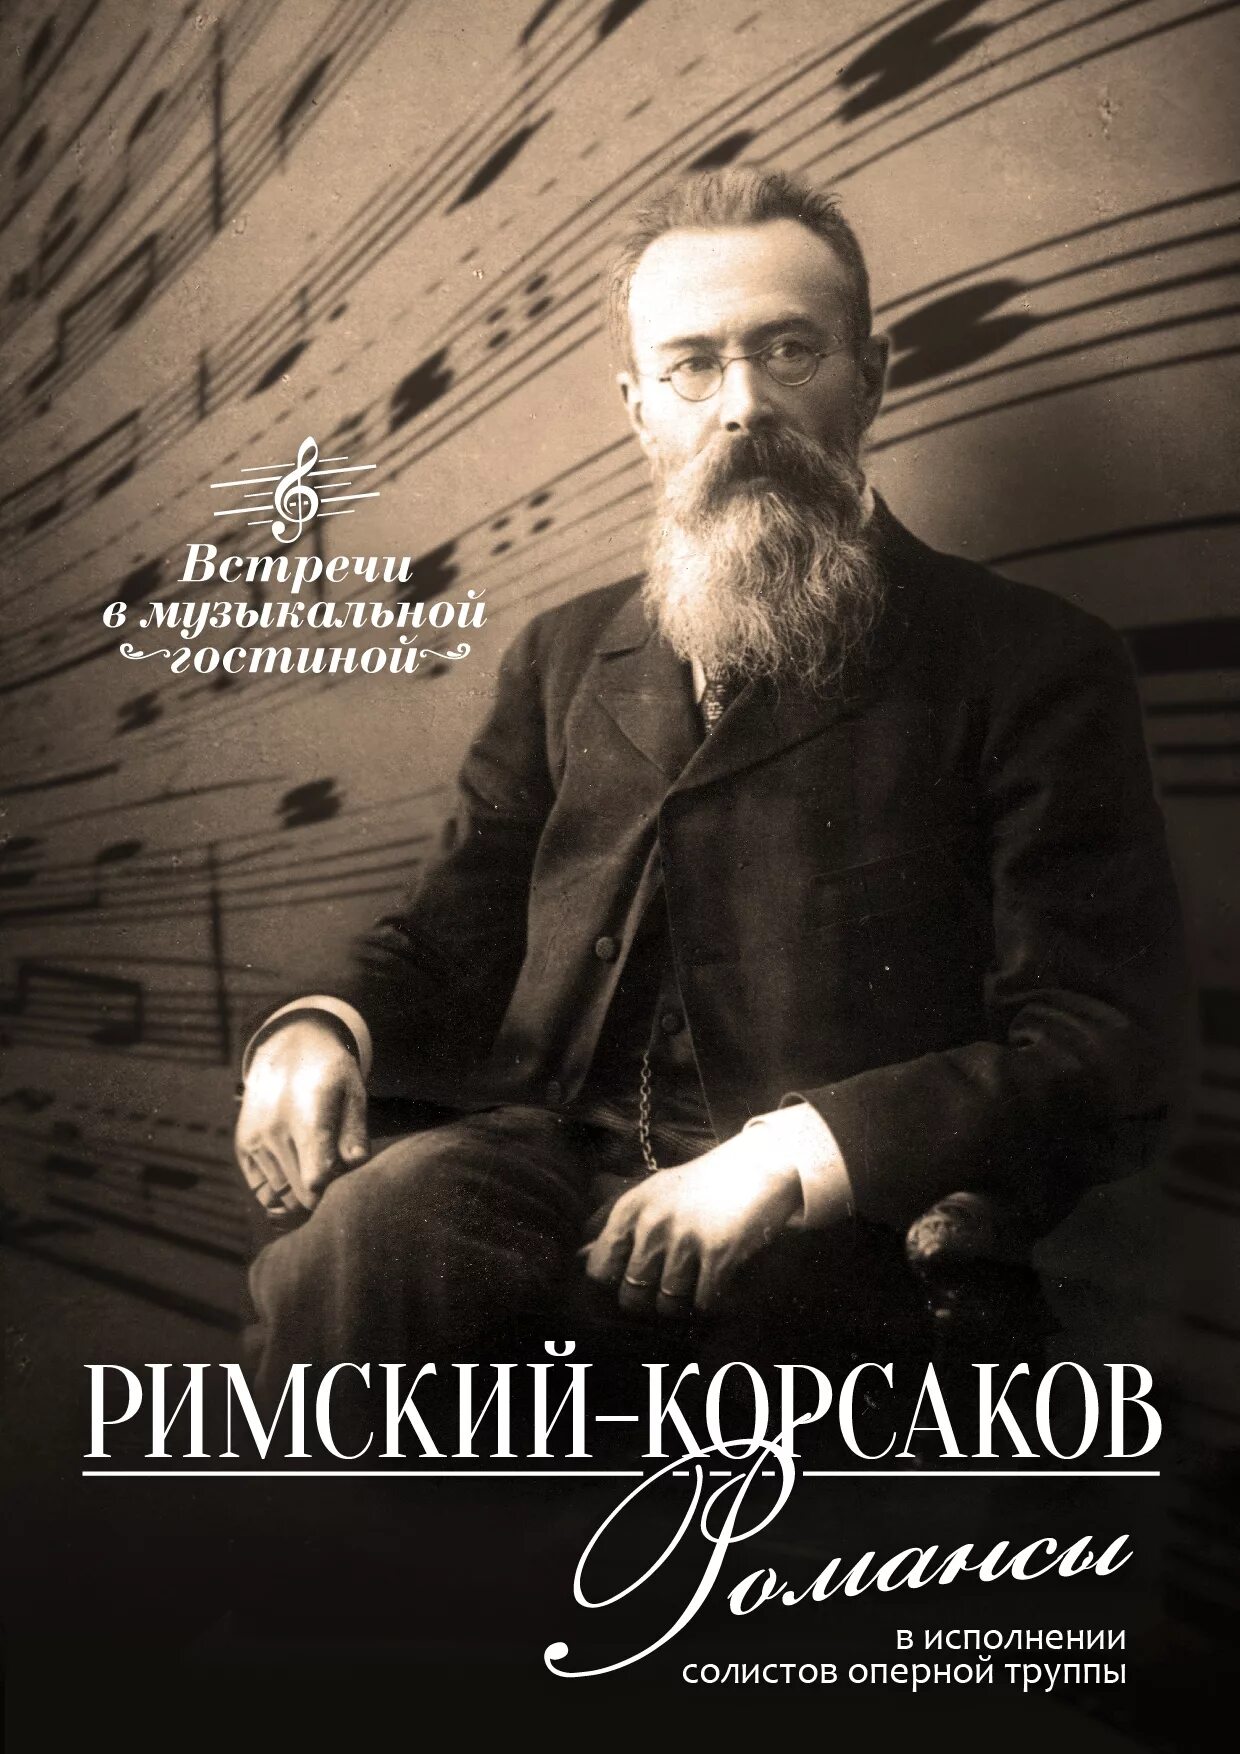 Н. А. Римского-Корсакова. Римский Корсаков портрет композитора.